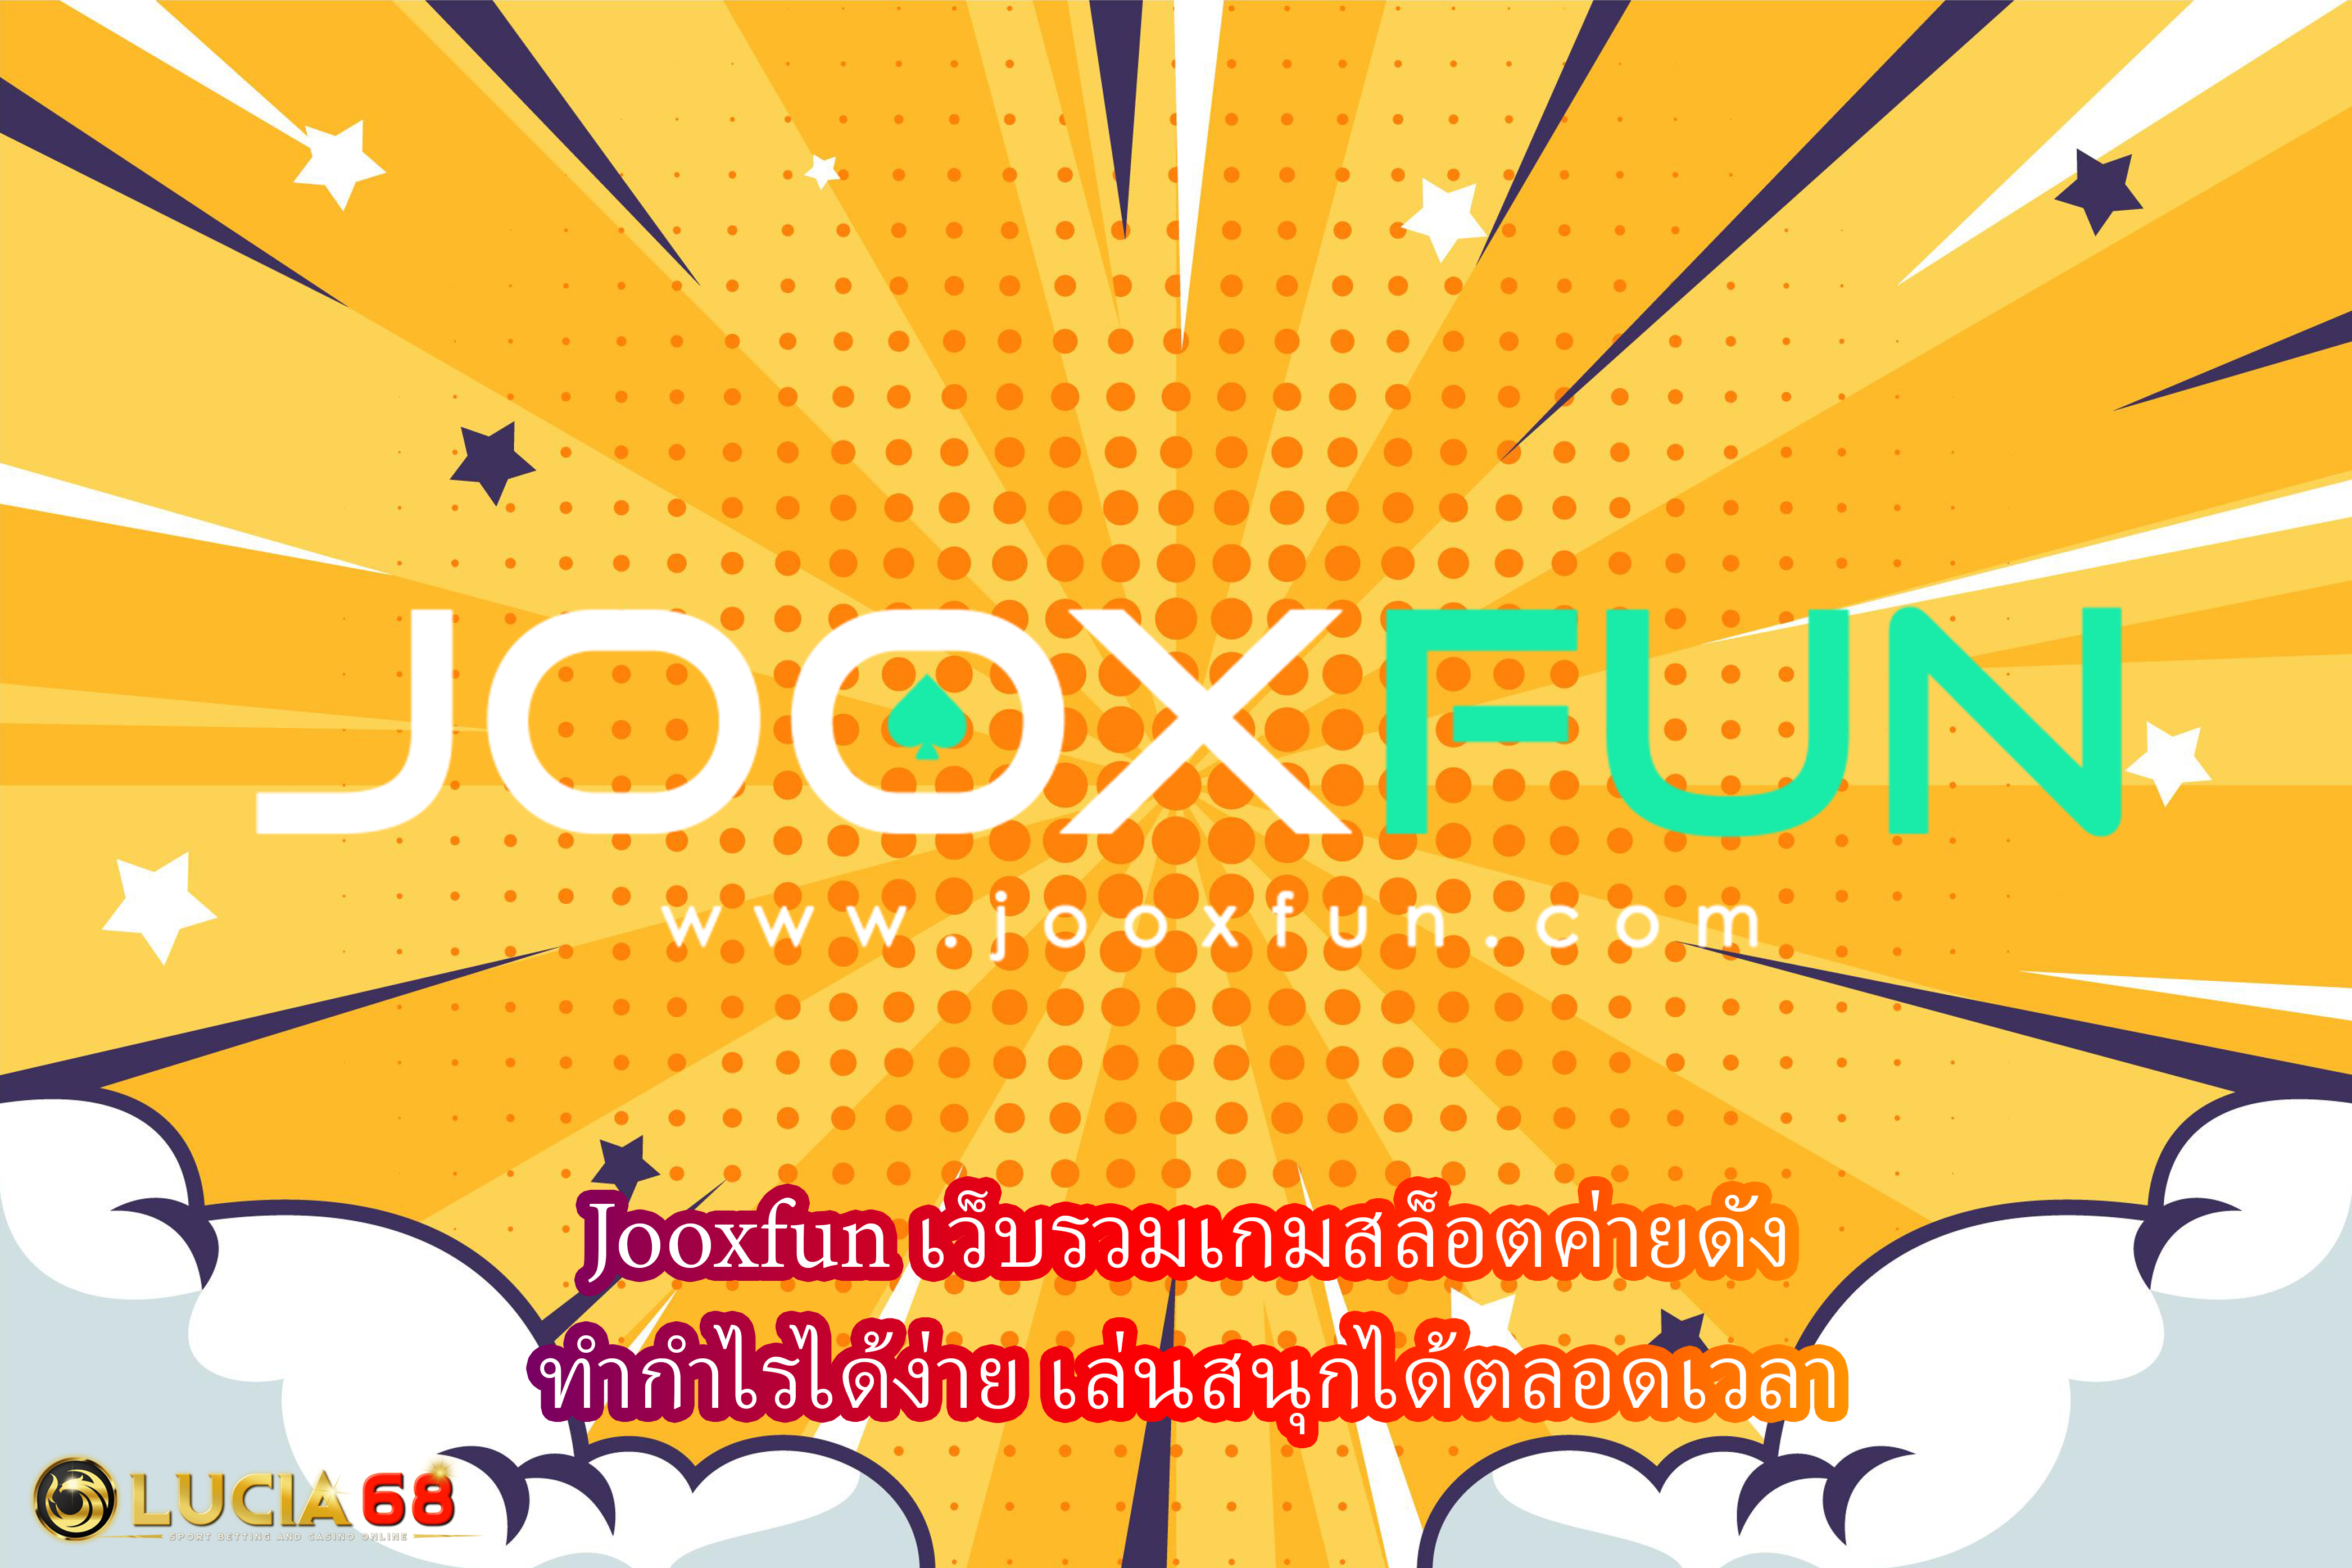 Jooxfun เว็บรวมเกมสล็อตค่ายดัง ทำกำไรได้ง่าย เล่นสนุกได้ตลอดเวลา